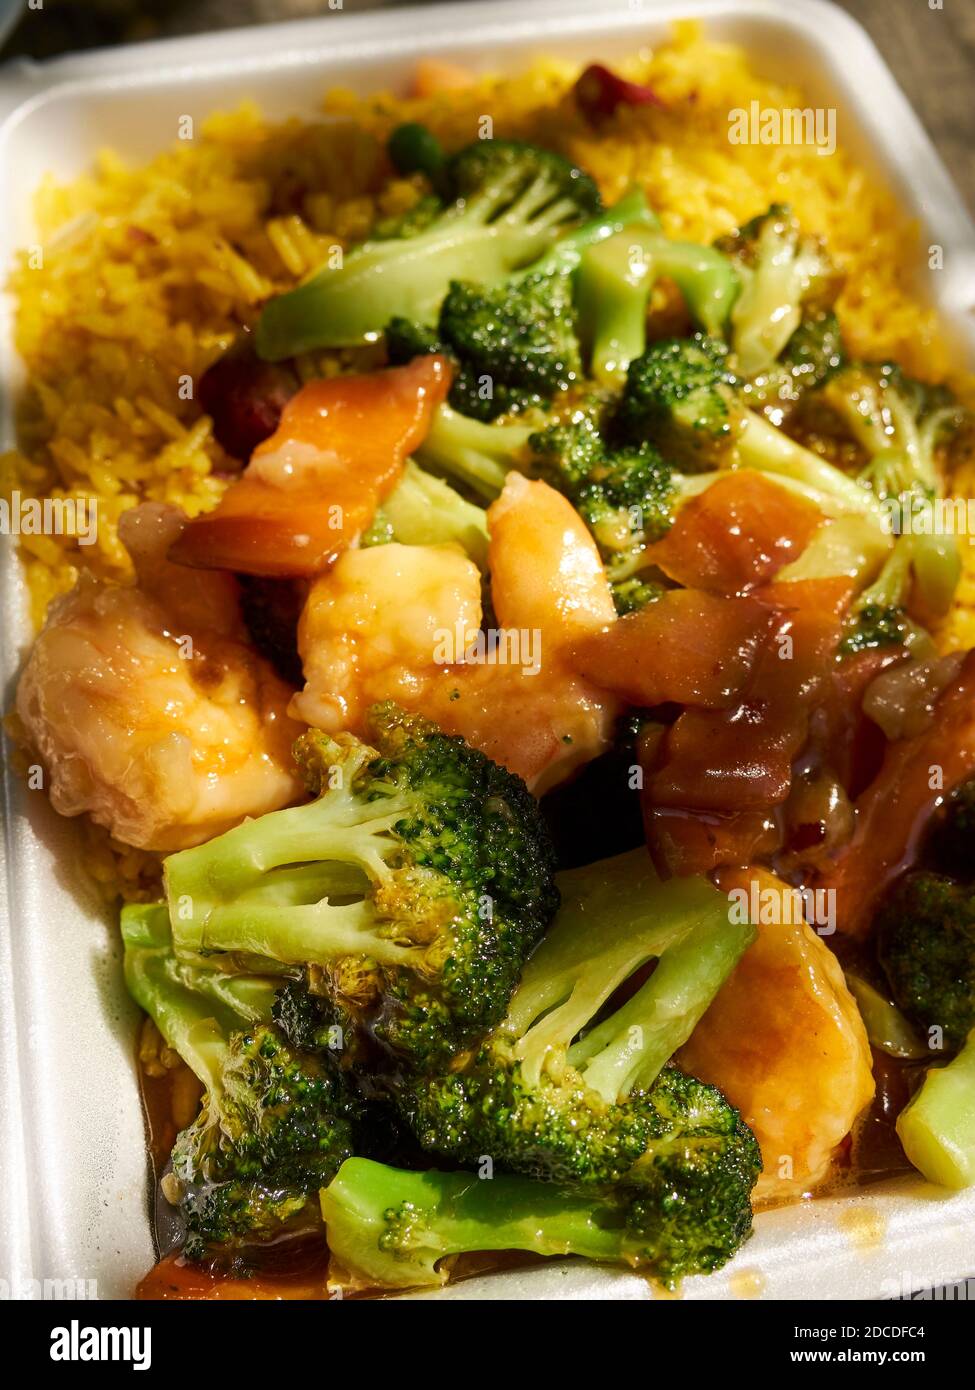 Gamberi con broccoli su riso fritto - un cinese/americano iconico estrarre la capsula in un contenitore di plastica in schiuma Foto Stock